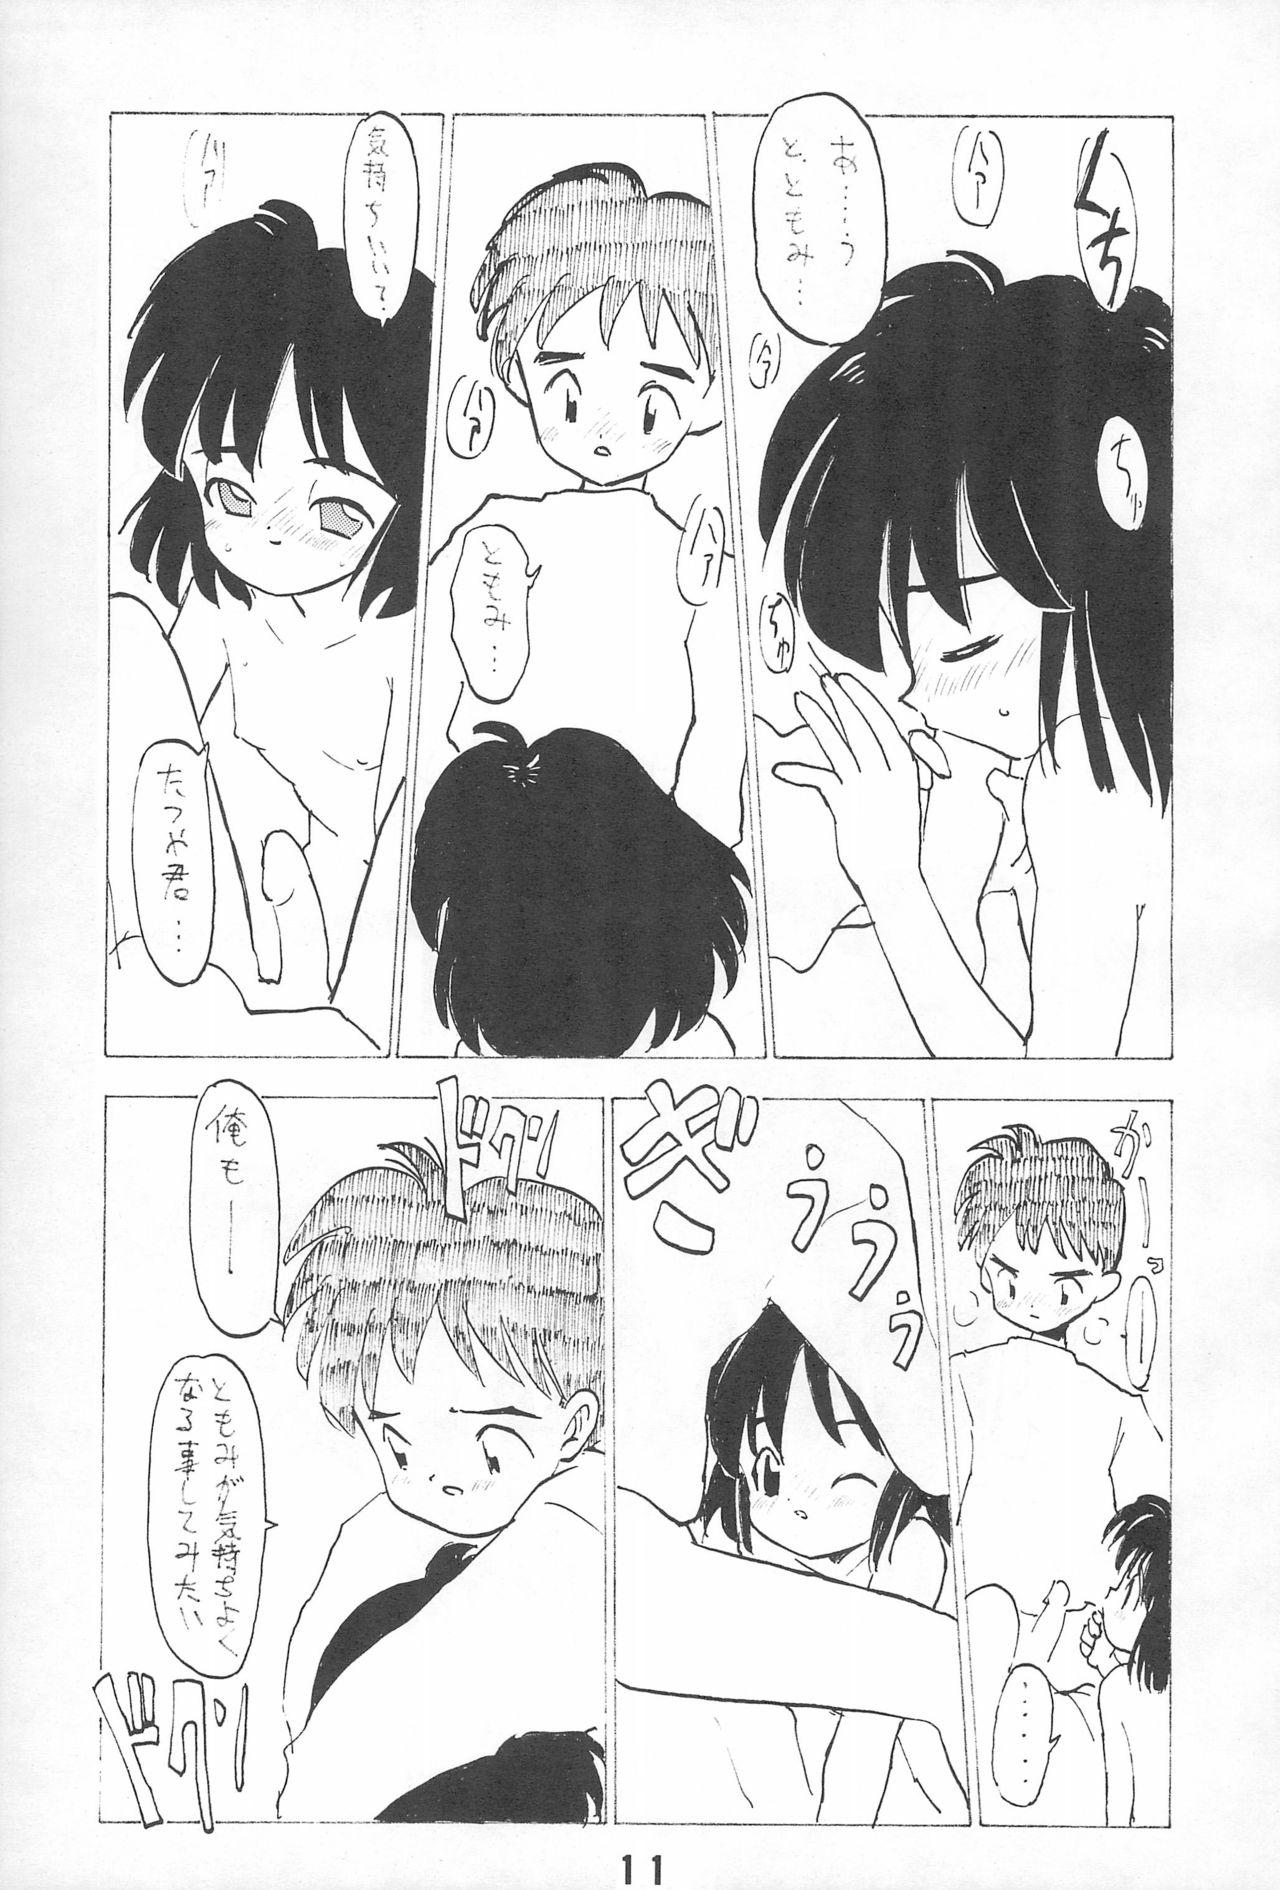 Upskirt Mihattatsu Lady 4 - Original Hot Girl Fucking - Page 11